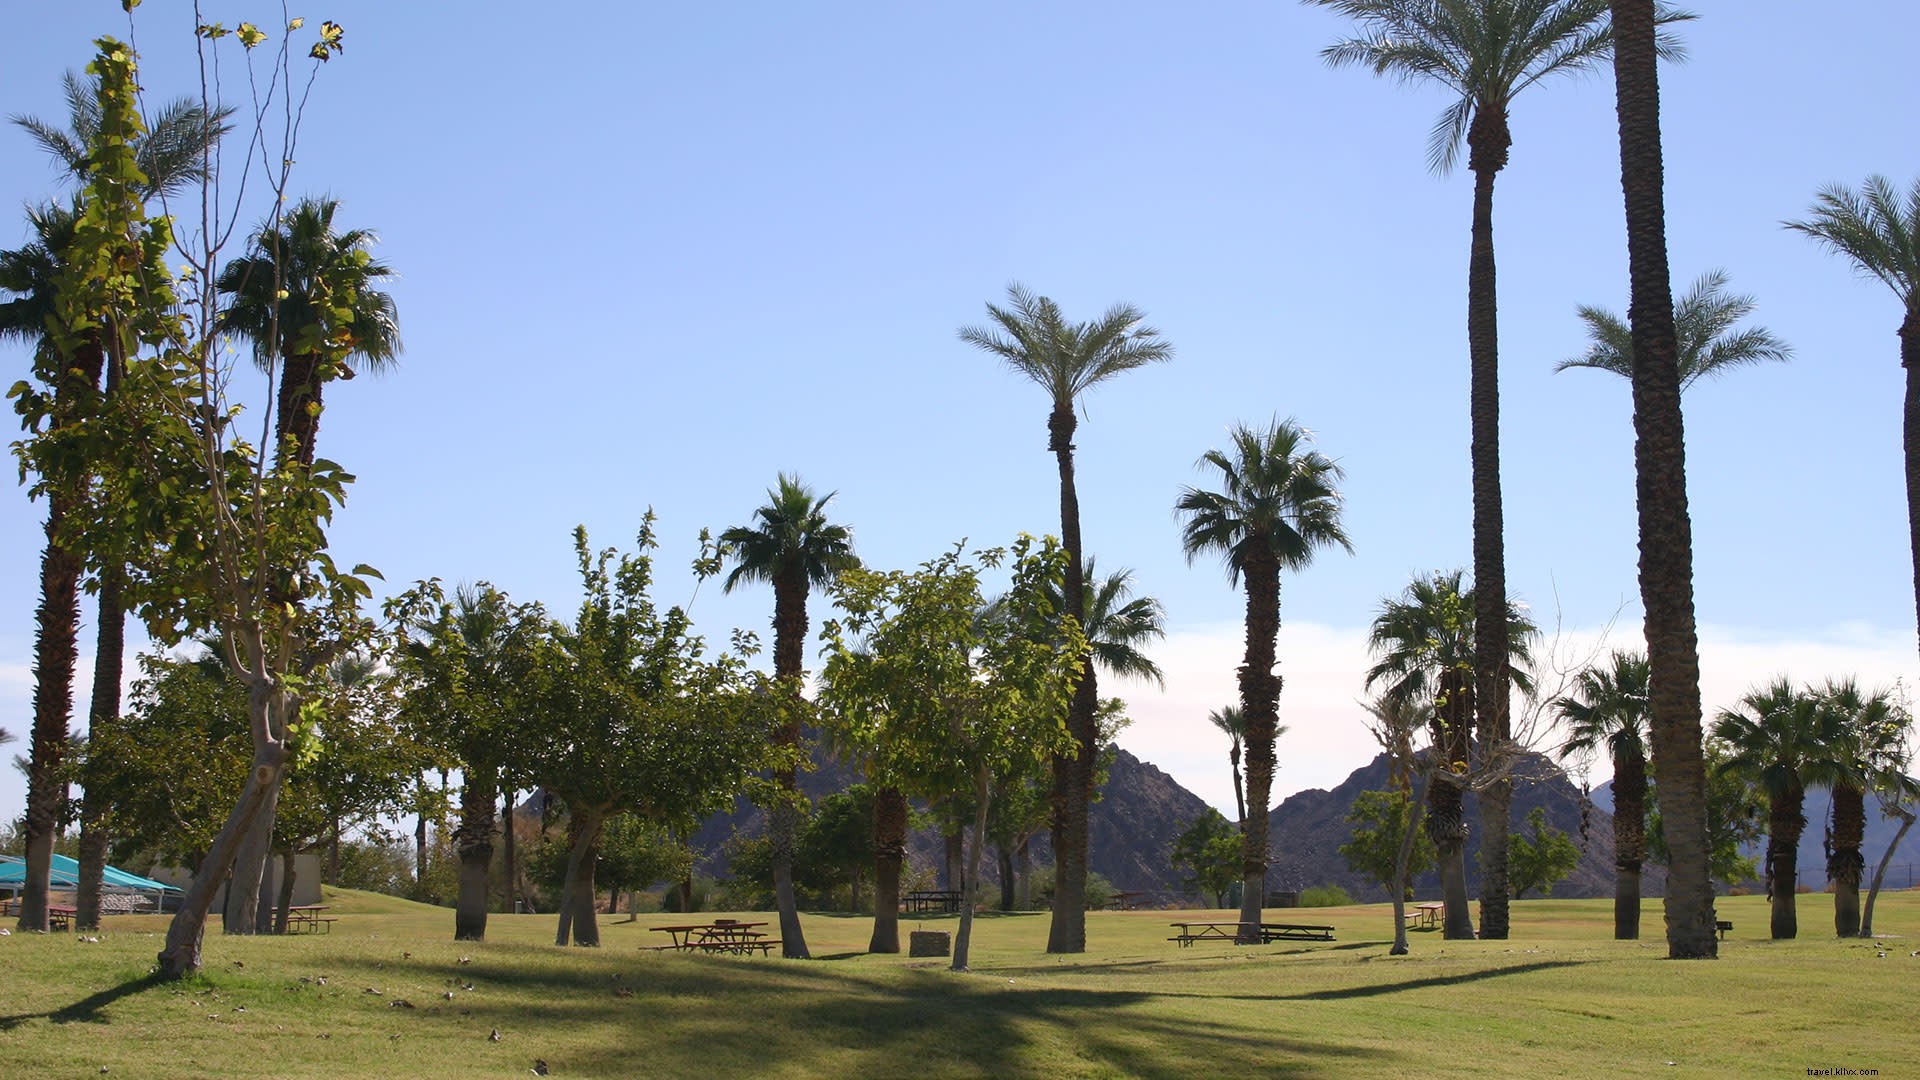 Ótimos lugares para fazer um piquenique e explorar em Greater Palm Springs 